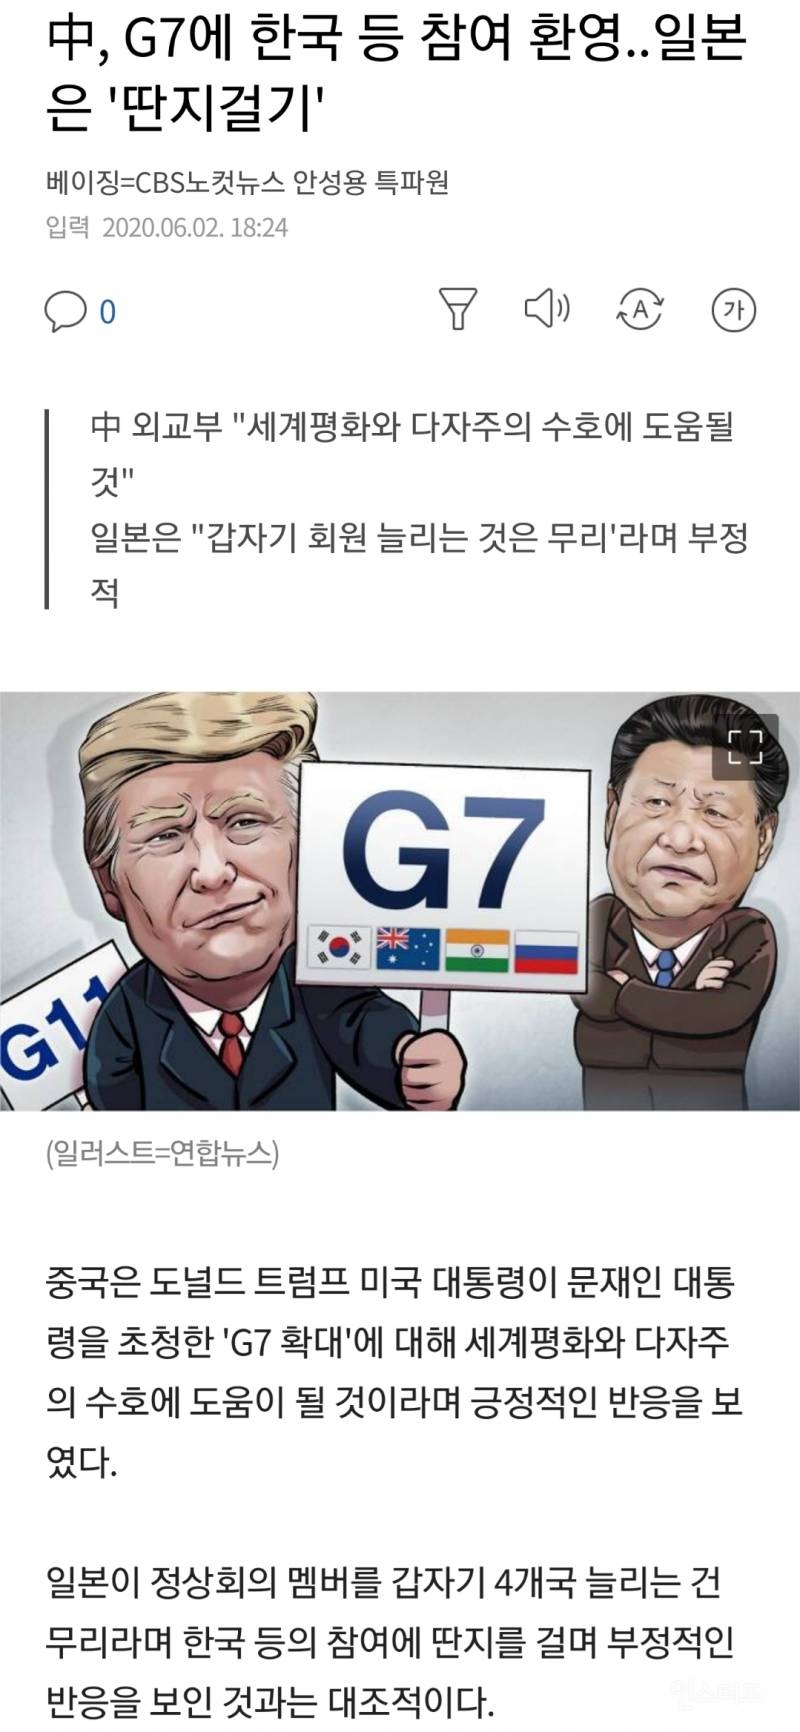 한국 G11합류 소식에 일본만 반대하는 현상황 | 인스티즈